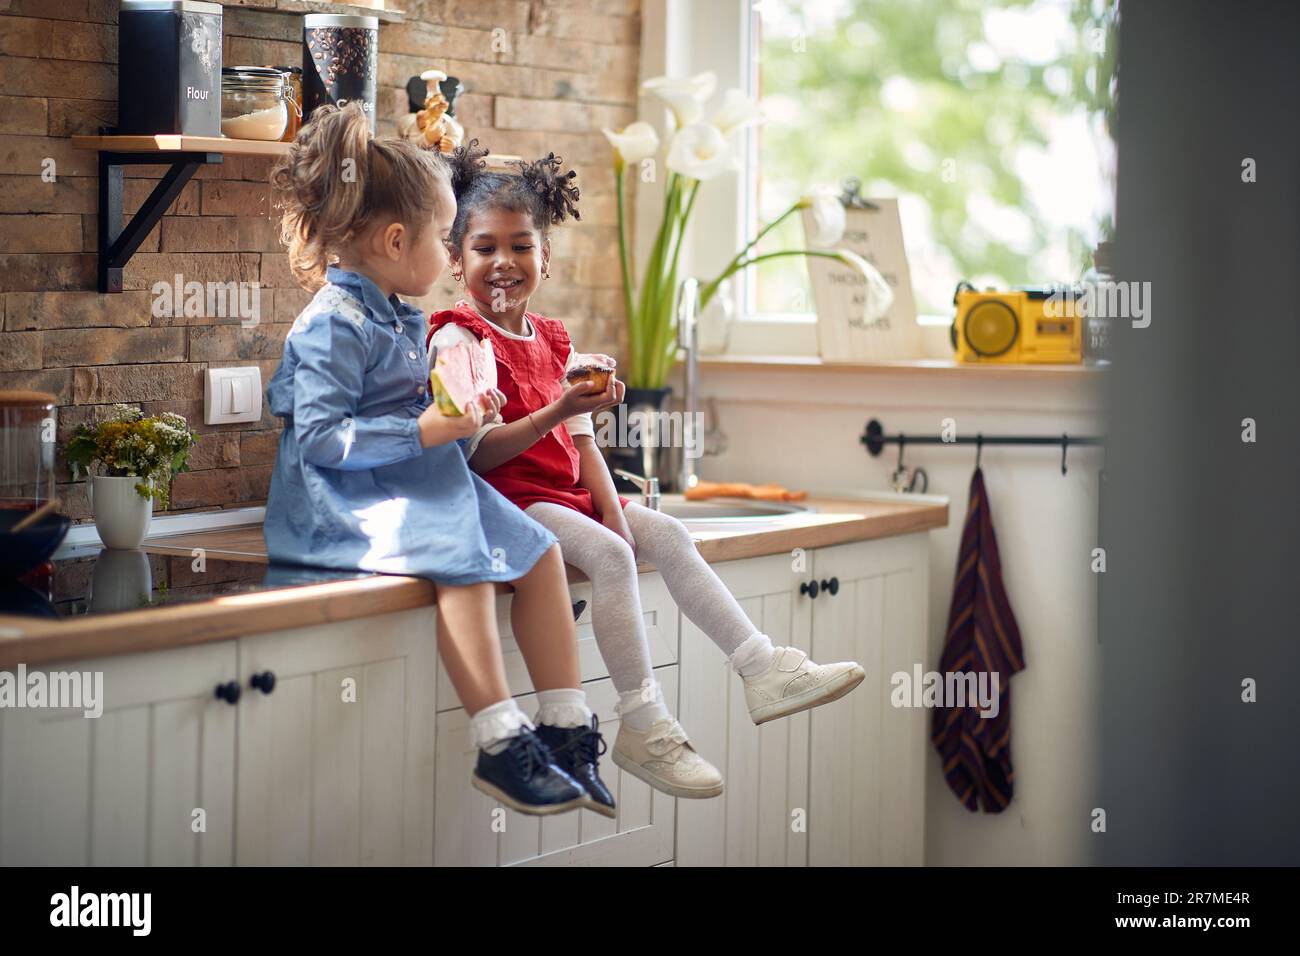 Zwei niedliche kleine Mädchen sitzen auf der Küchentheke, genießen einen Snack zusammen und essen eine Wassermelone und einen Muffin. Zuhause, Lebensstil, Familienkonzept Stockfoto